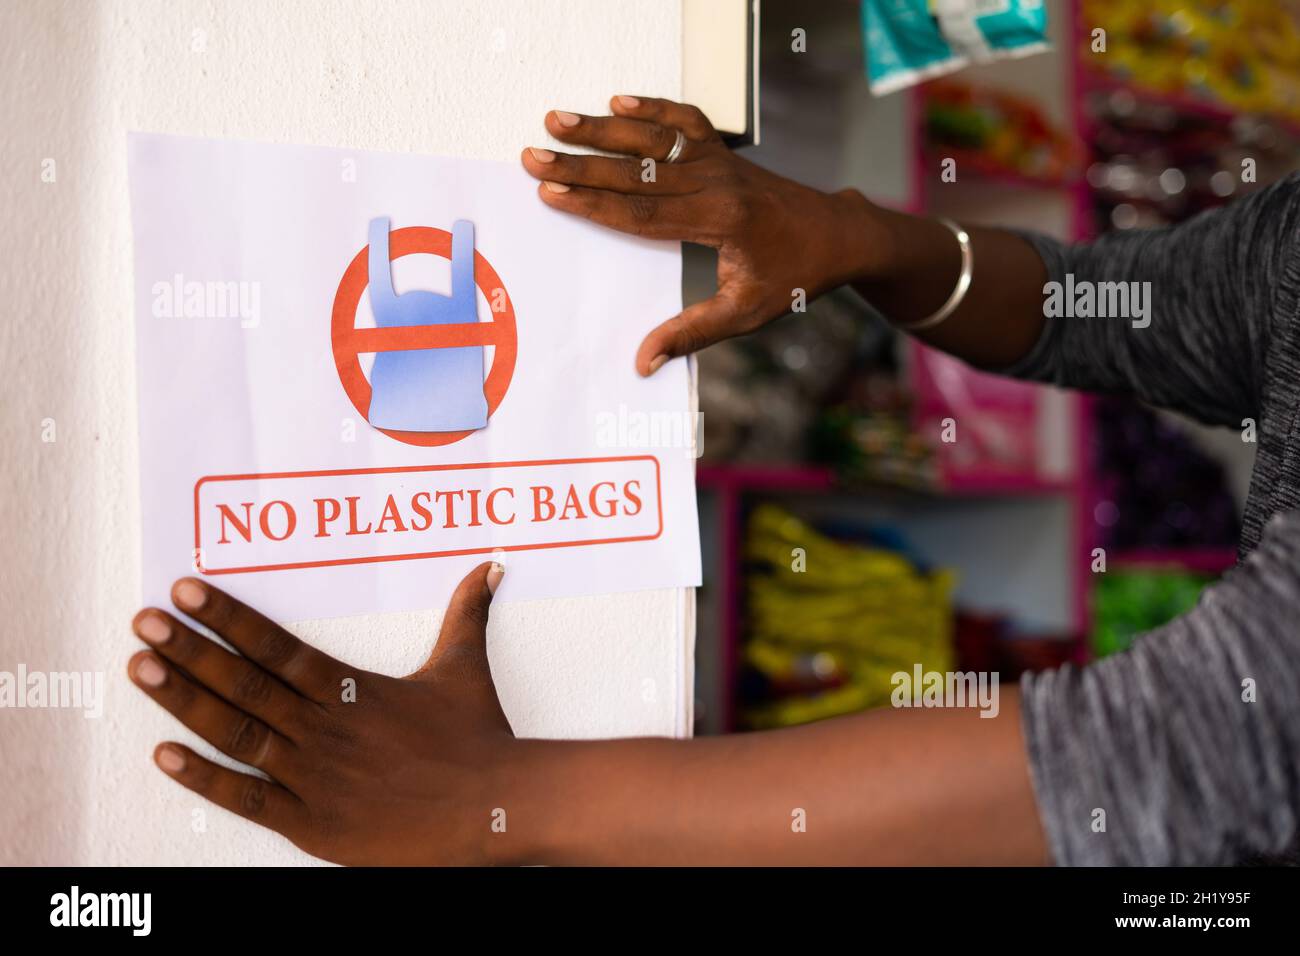 Nahaufnahme eines nicht erkennbaren Ladenbesitzers, der keine Plastiktüten an die Wand kleben lässt - Konzept zur Reduzierung der Plastiktüten und der Verwendung in Einzelhandelsgeschäften. Stockfoto